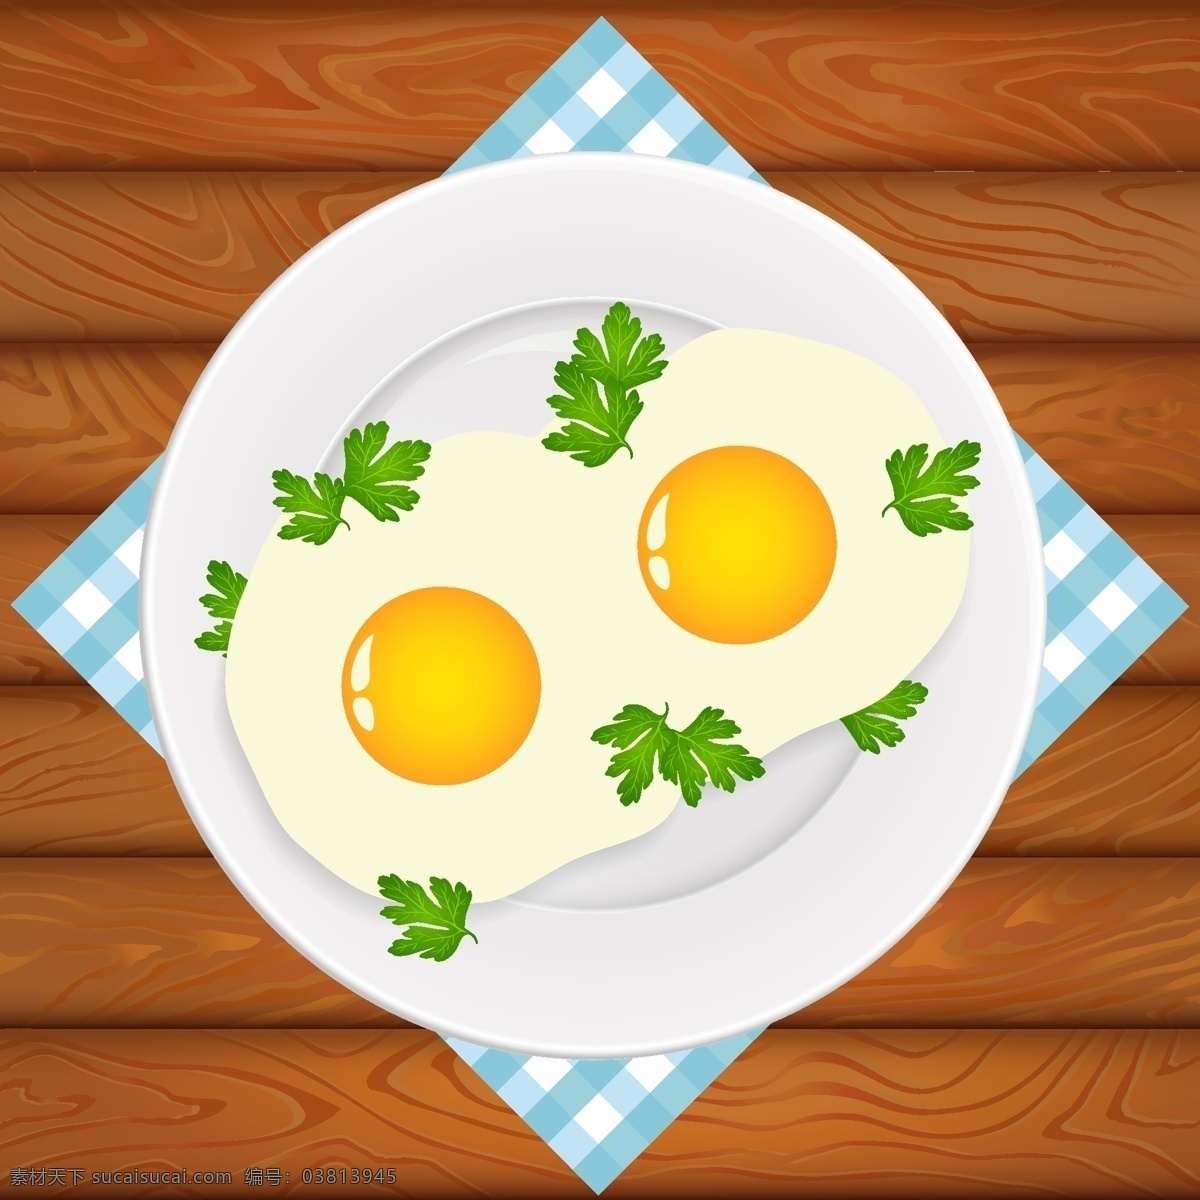 卡通 食物 装饰 蛋黄 矢量 煎蛋 营养 长高 矢量素材 装饰图案 设计元素